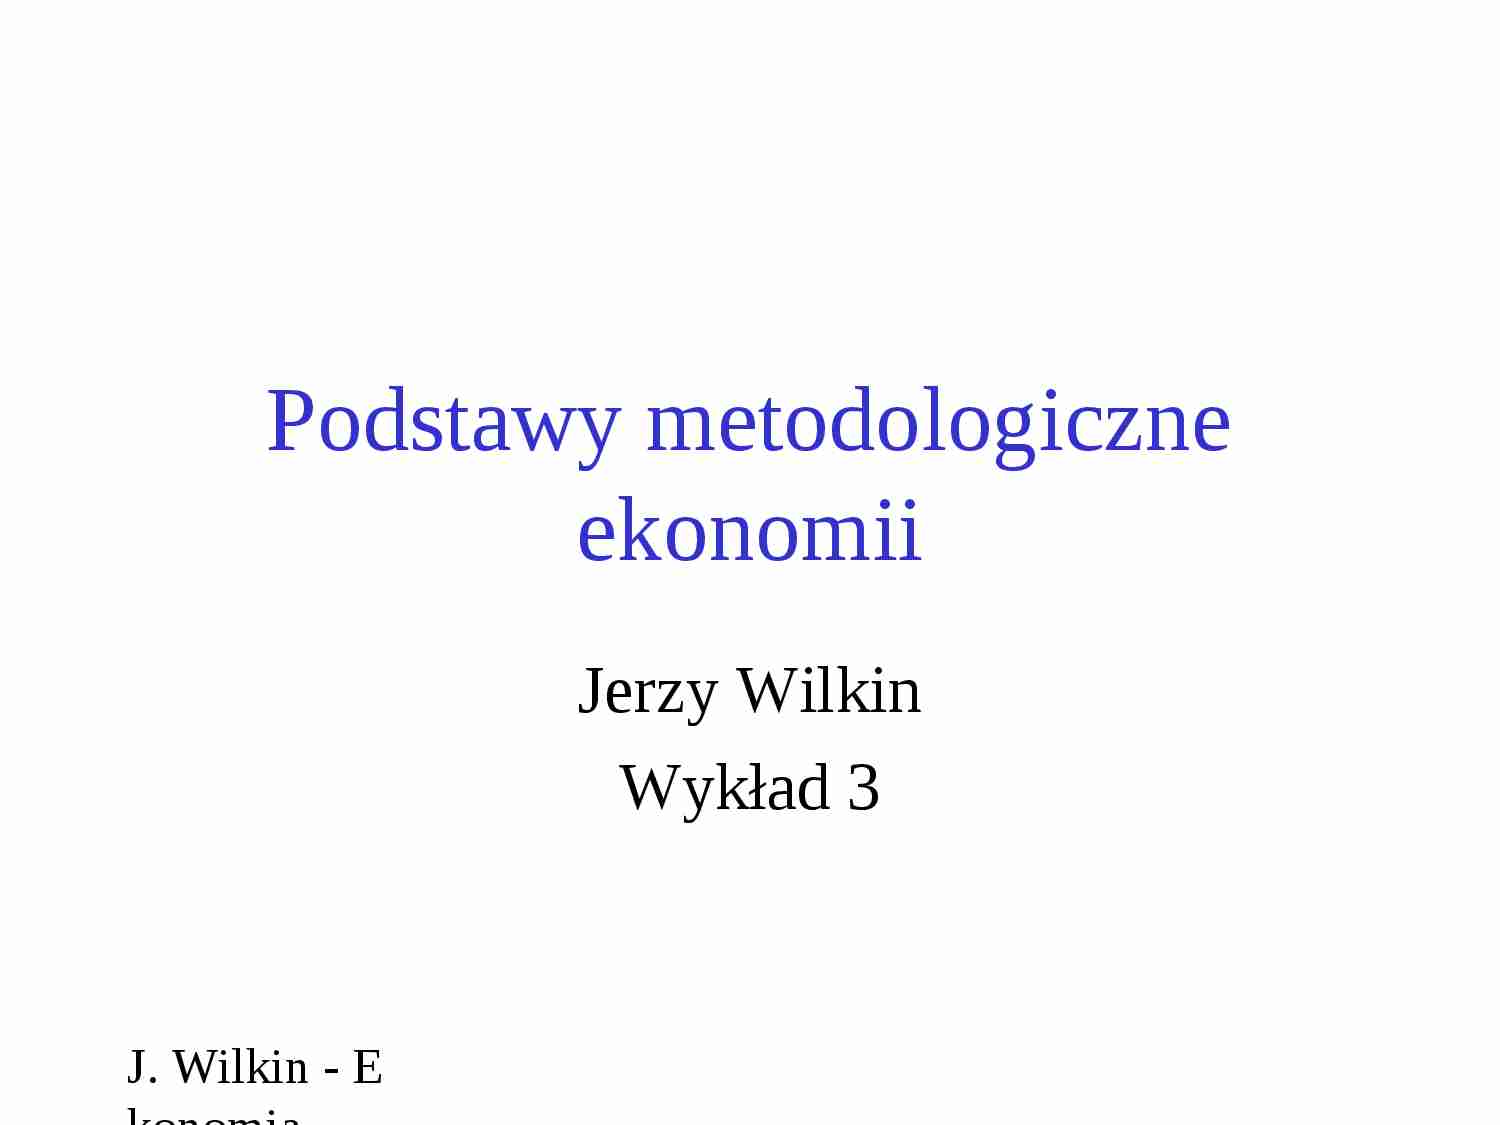 Podstawy metodologiczne ekonomii - wykład - strona 1